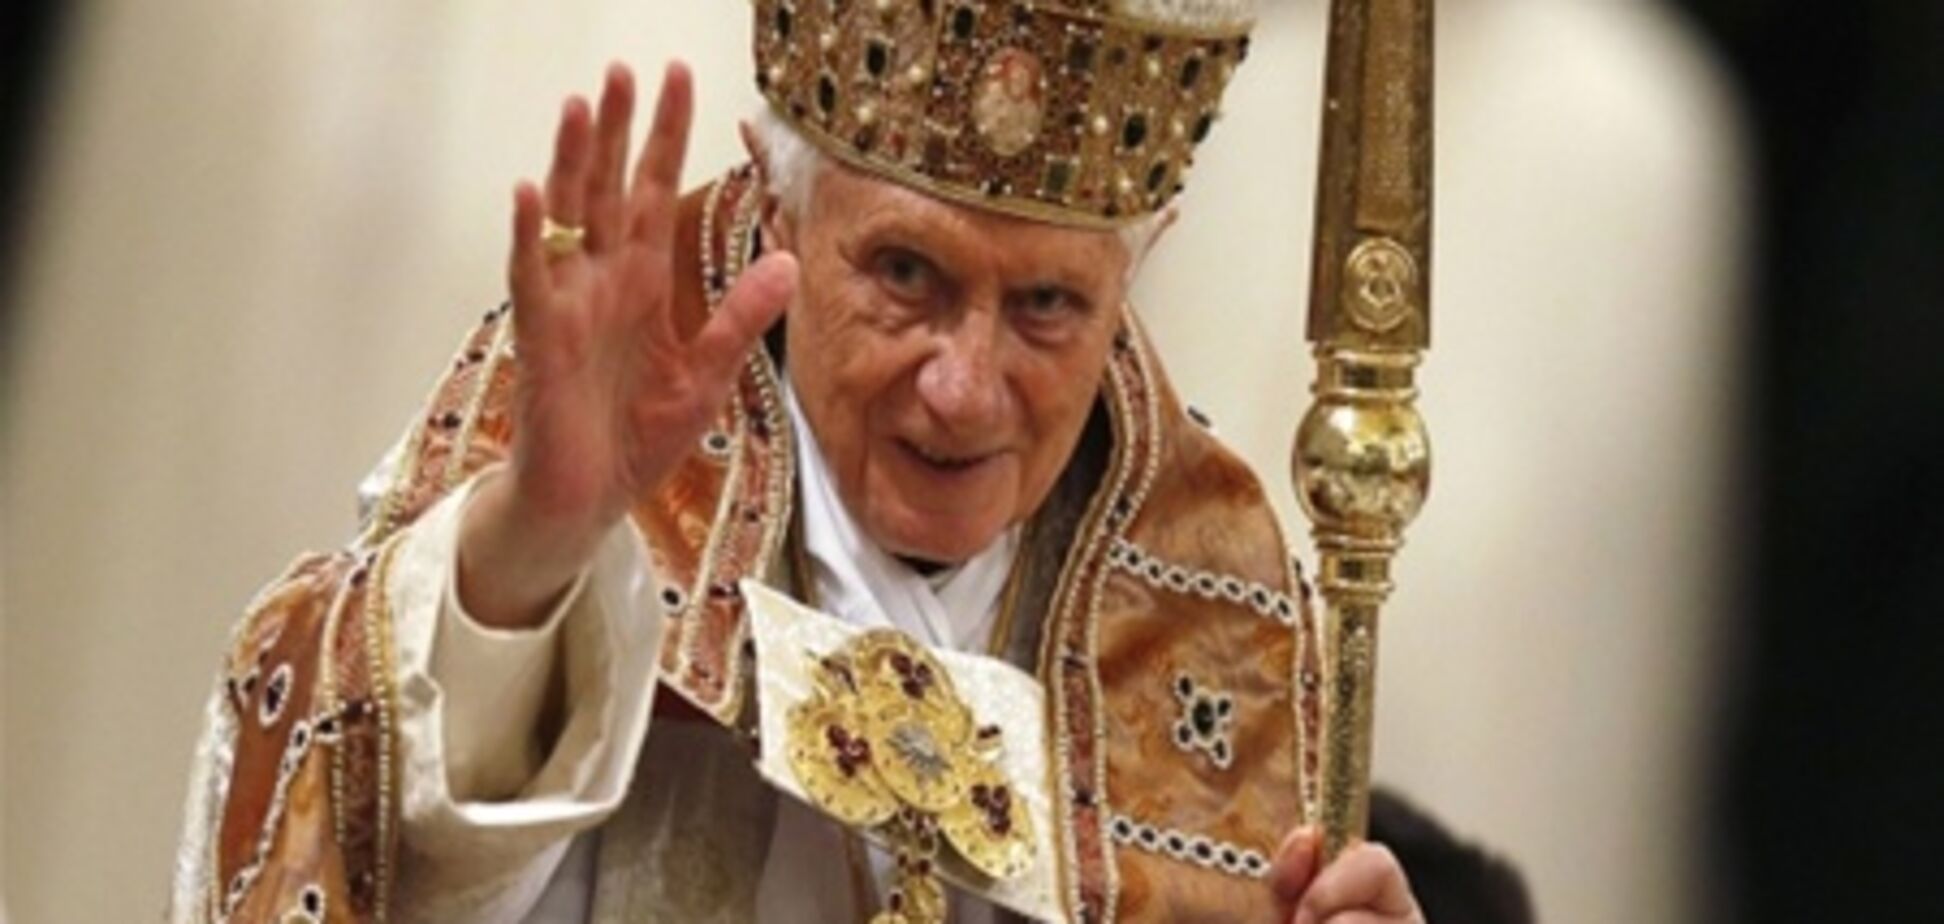 Итальянский священник сжег фото Бенедикта XVI